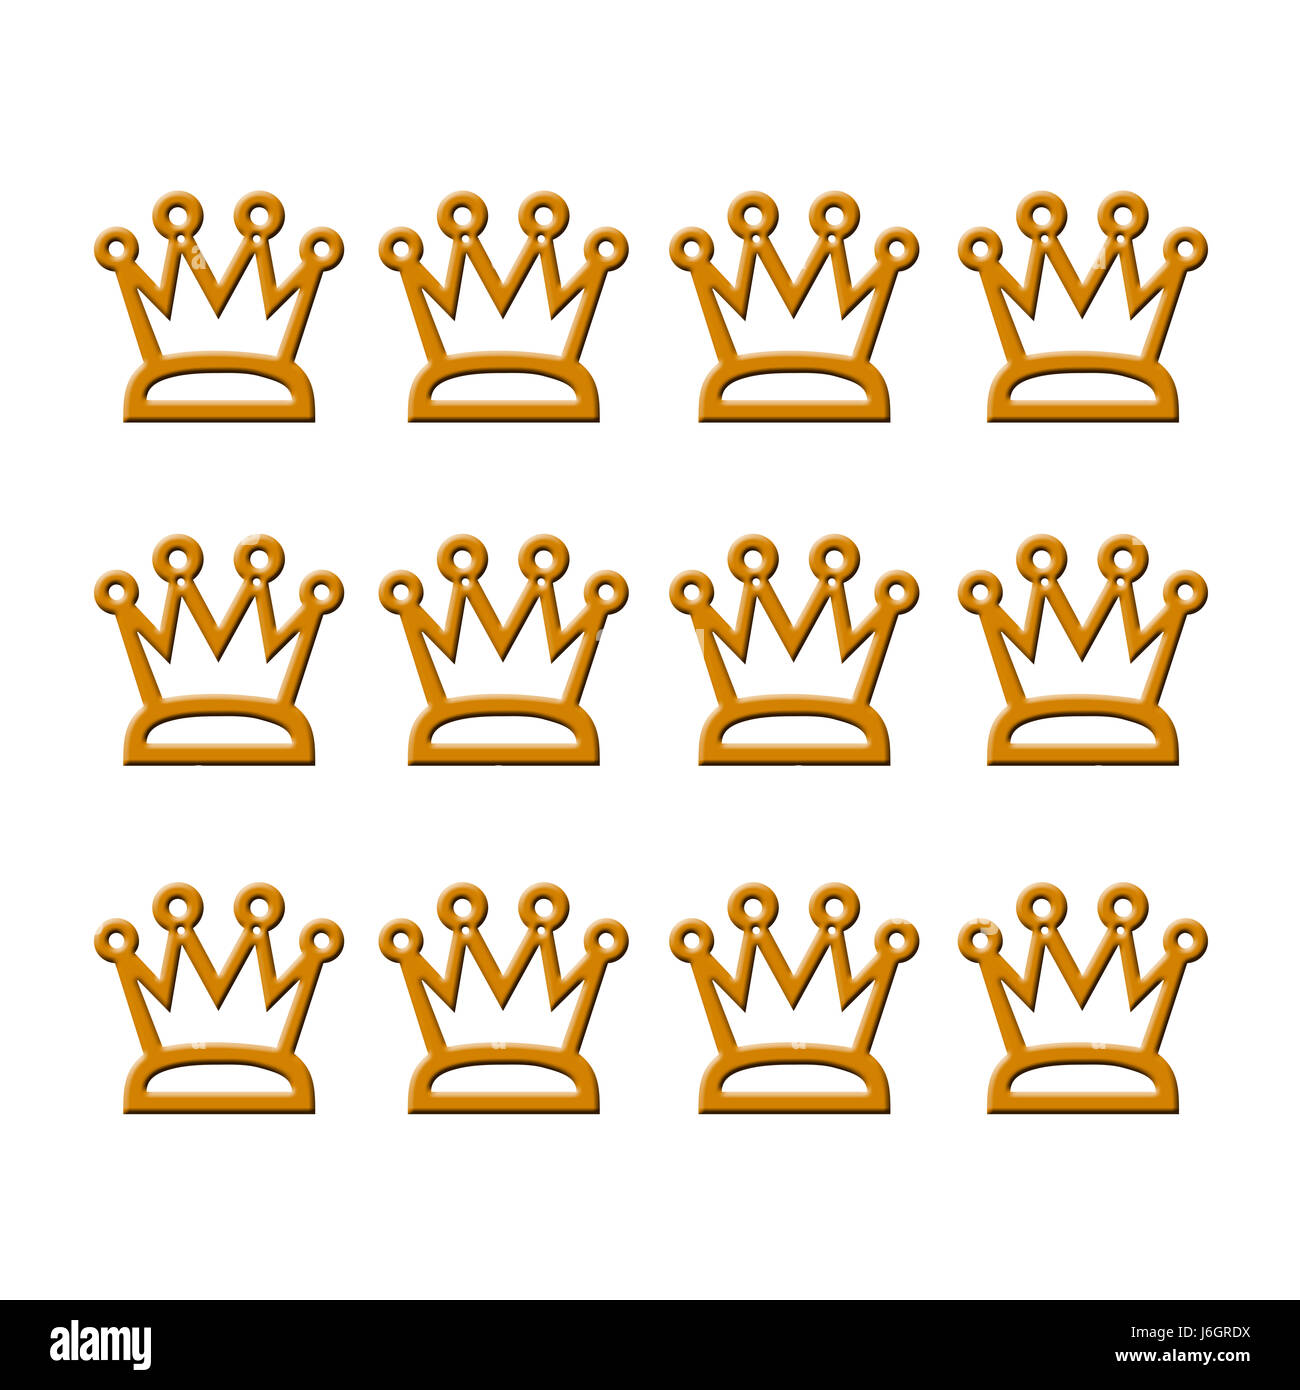 Corona nobile nobiltà incoronazione imperatore re coronated grafico simbolico golden Foto Stock